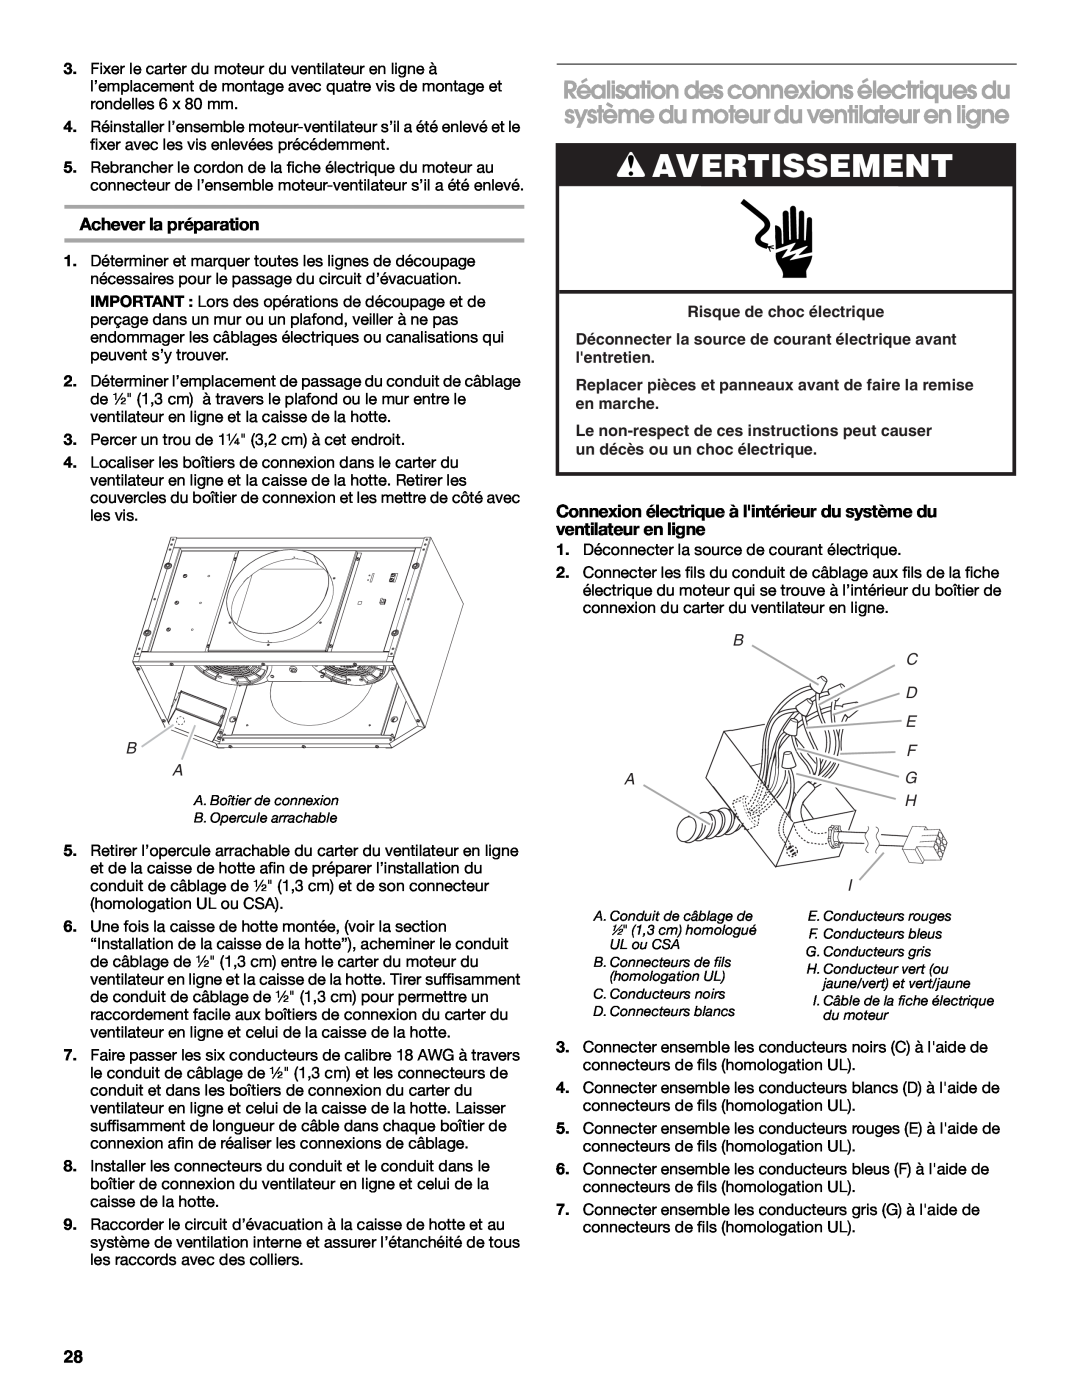 Whirlpool 48, 36 installation instructions Avertissement, Achever la préparation, C D E F G H 